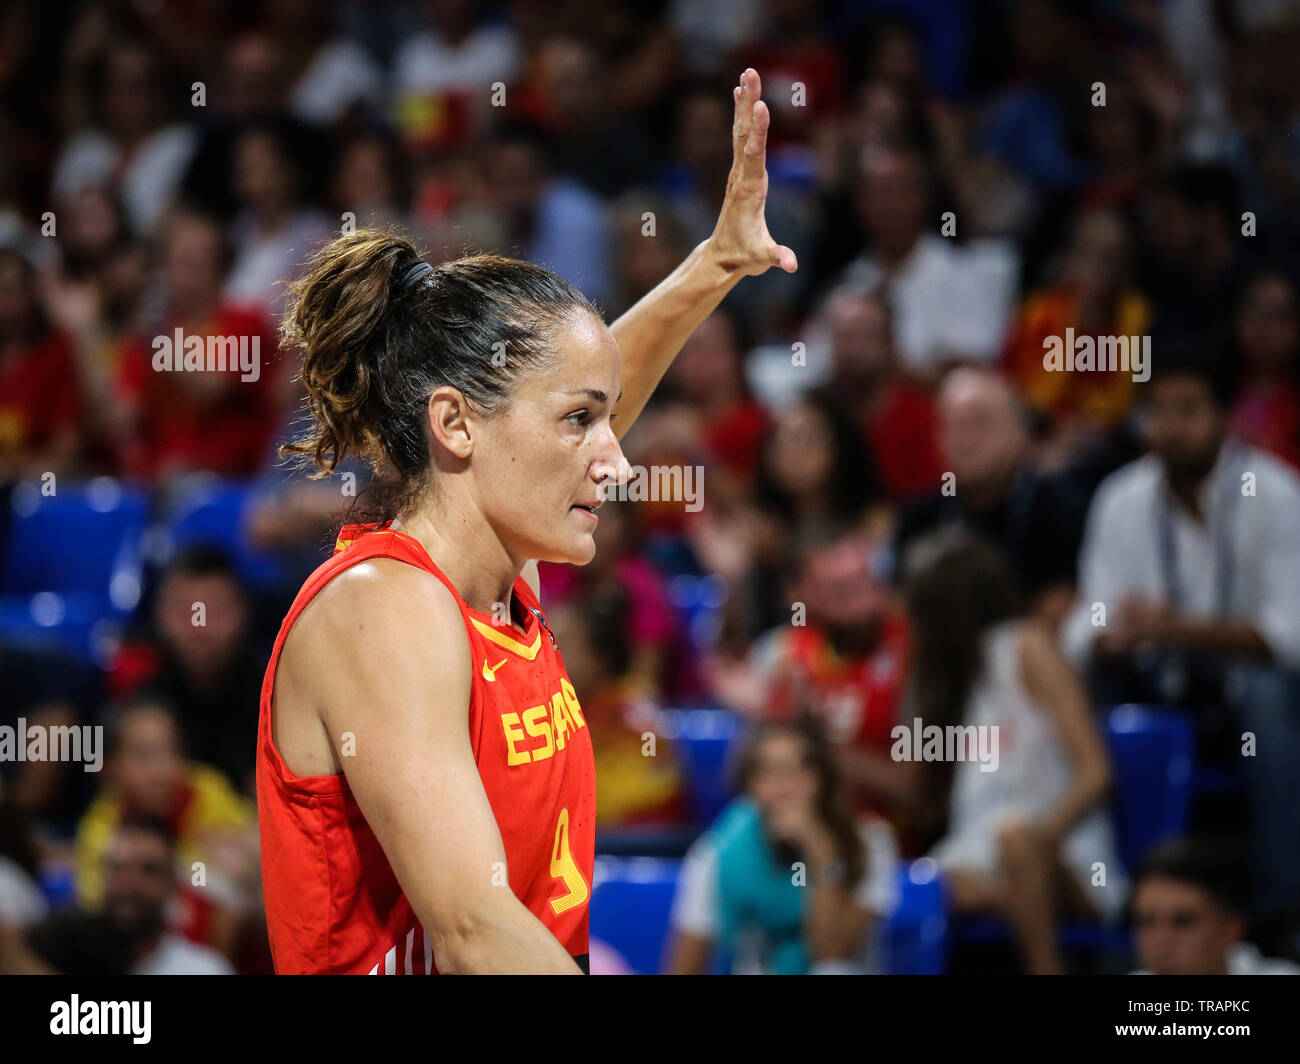 Tenerife, Espagne, le 28 septembre 2018 : joueur de basket-ball espagnole Laia Palau au cours de match de basket-ball l'Espagne contre l'Australie. Banque D'Images